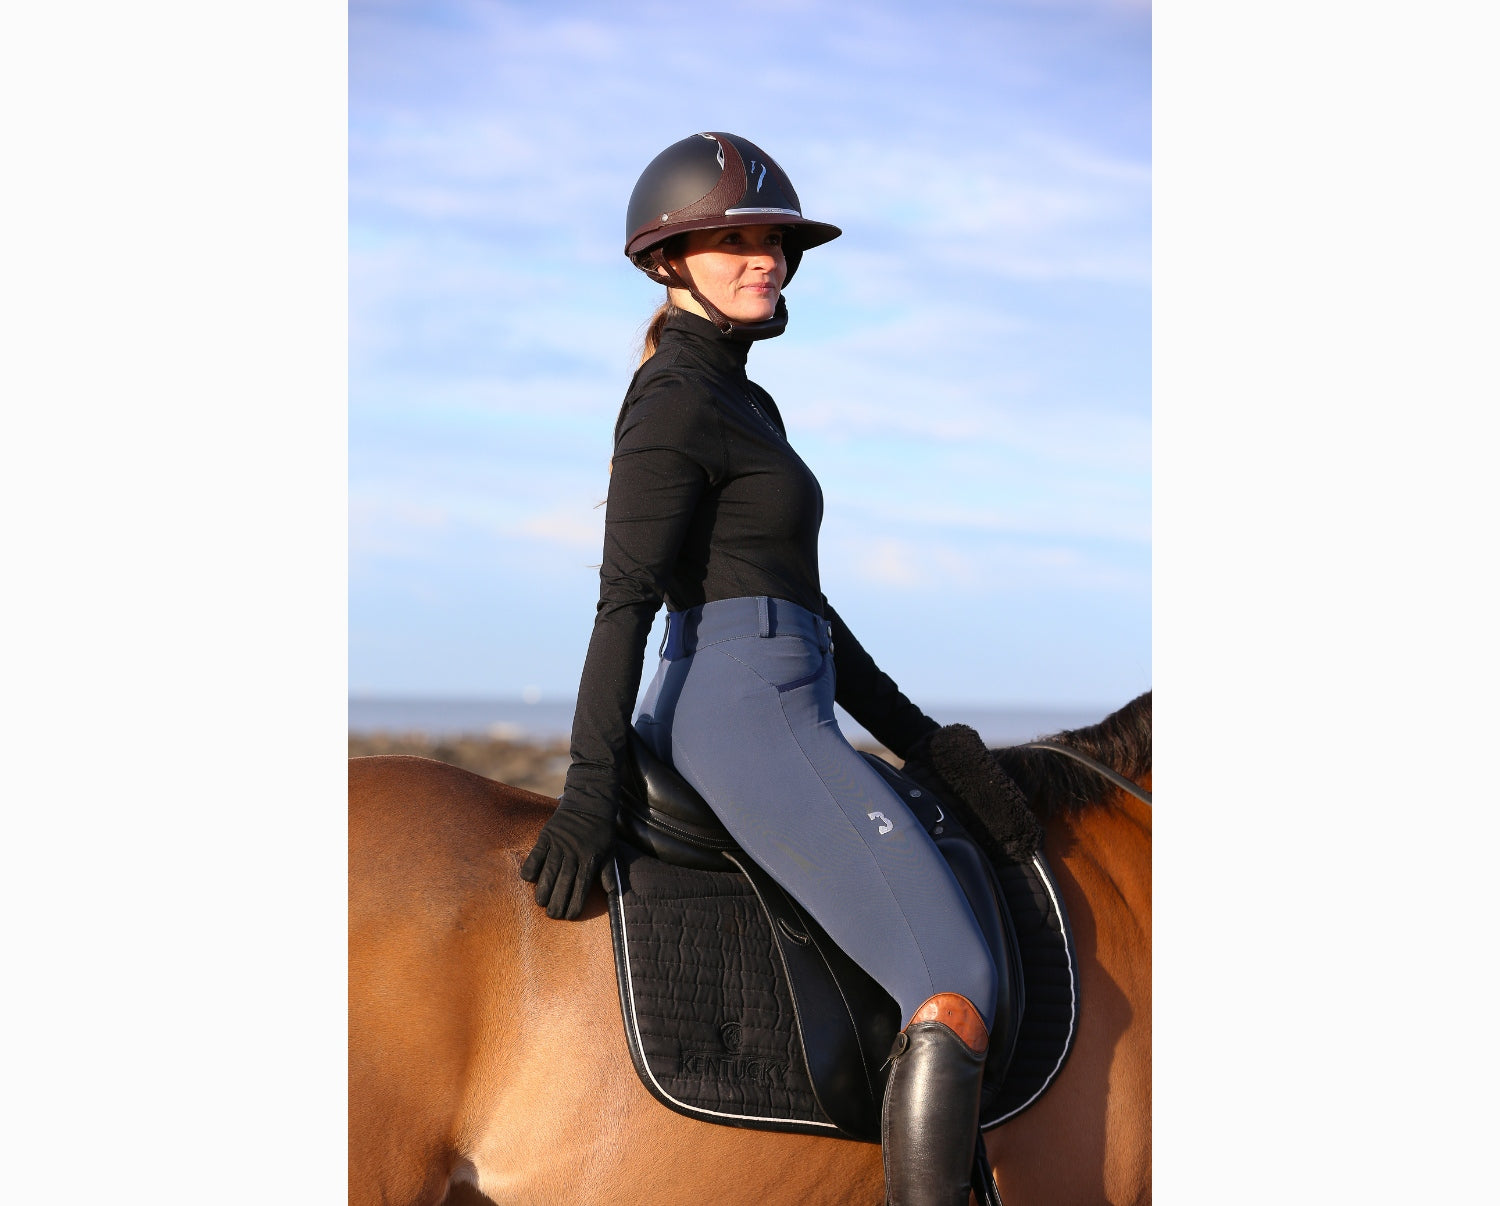 Pantalon équitation femme 560 JUMP basanes silicone bordeaux - Maroc, achat en ligne